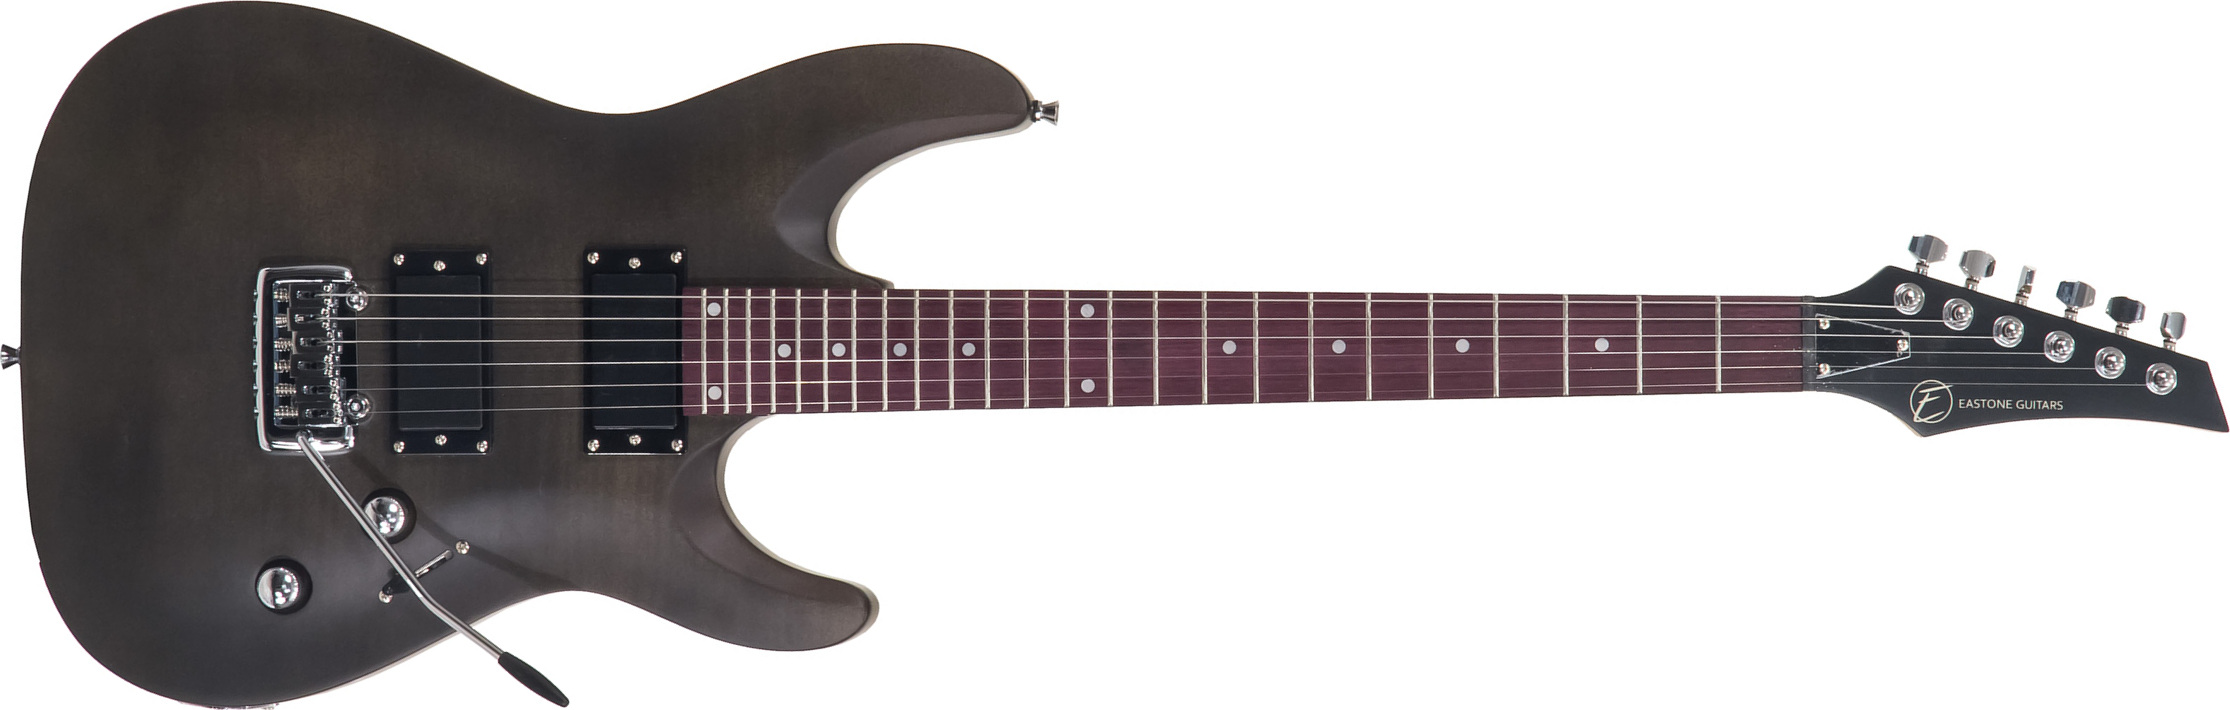 Eastone Metdc Hh Trem Pur - Black Satin - Elektrische gitaar in Str-vorm - Main picture